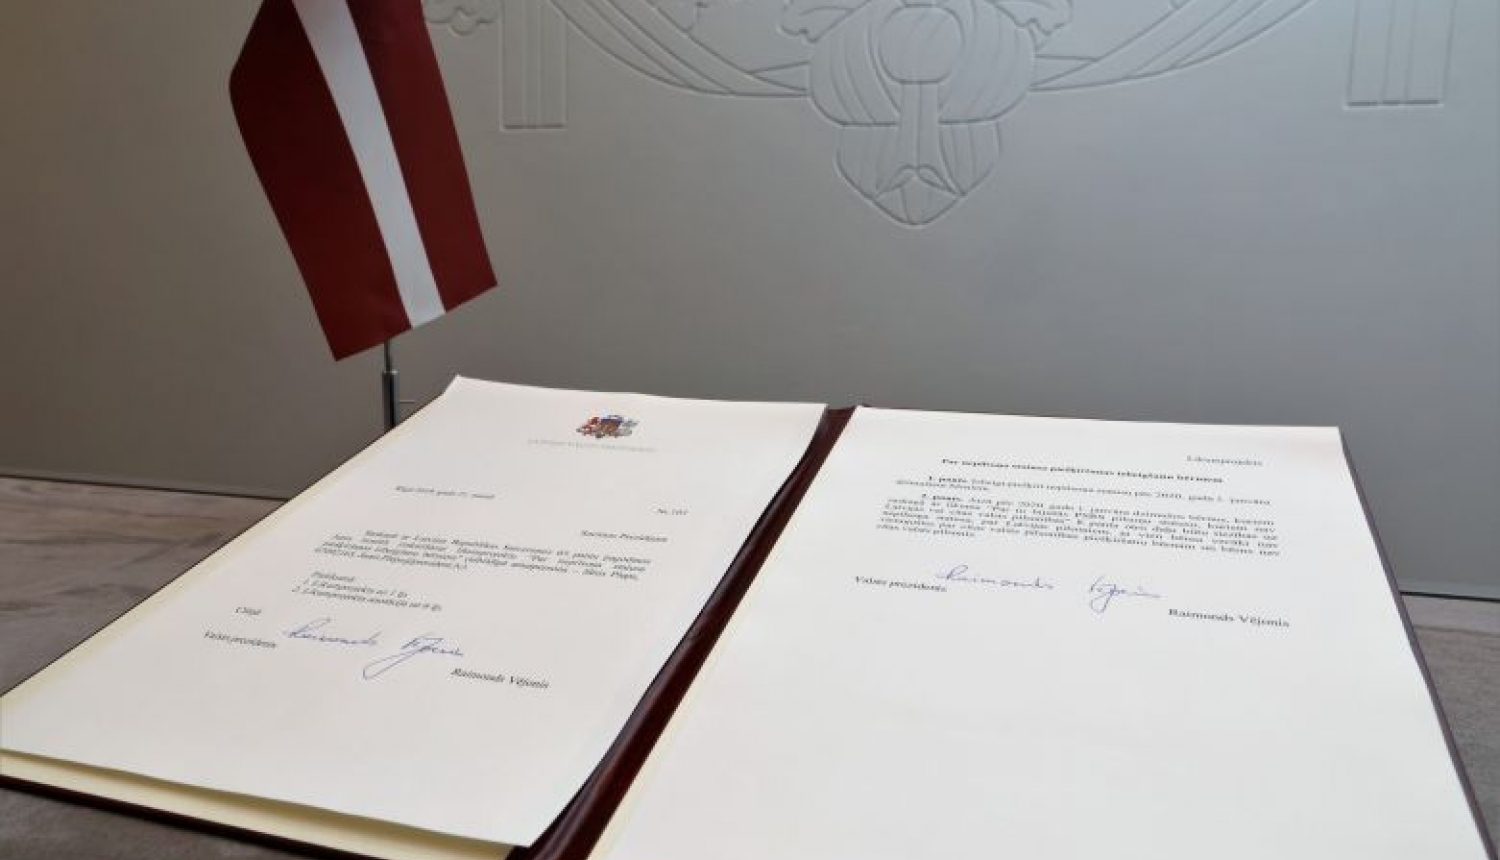 Valsts prezidents iesniedz Saeimā likumprojektu “Par nepilsoņa statusa piešķiršanas izbeigšanu bērniem”